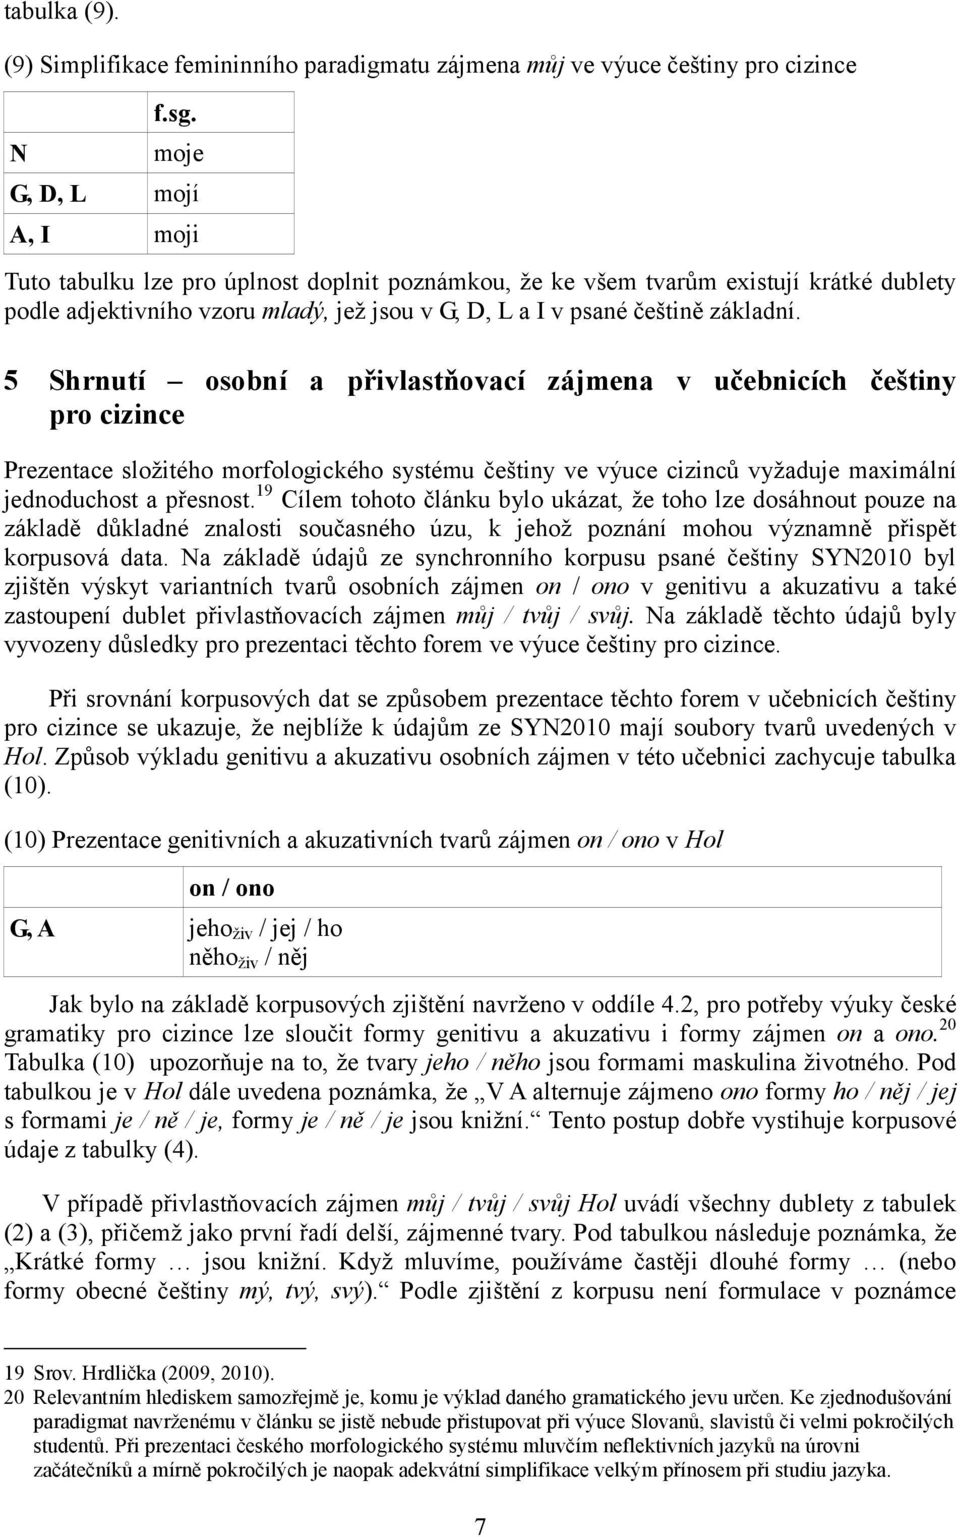 5 Shrnutí osobní a přivlastňovací zájmena v učebnicích češtiny pro cizince Prezentace složitého morfologického systému češtiny ve výuce cizinců vyžaduje maximální jednoduchost a přesnost.